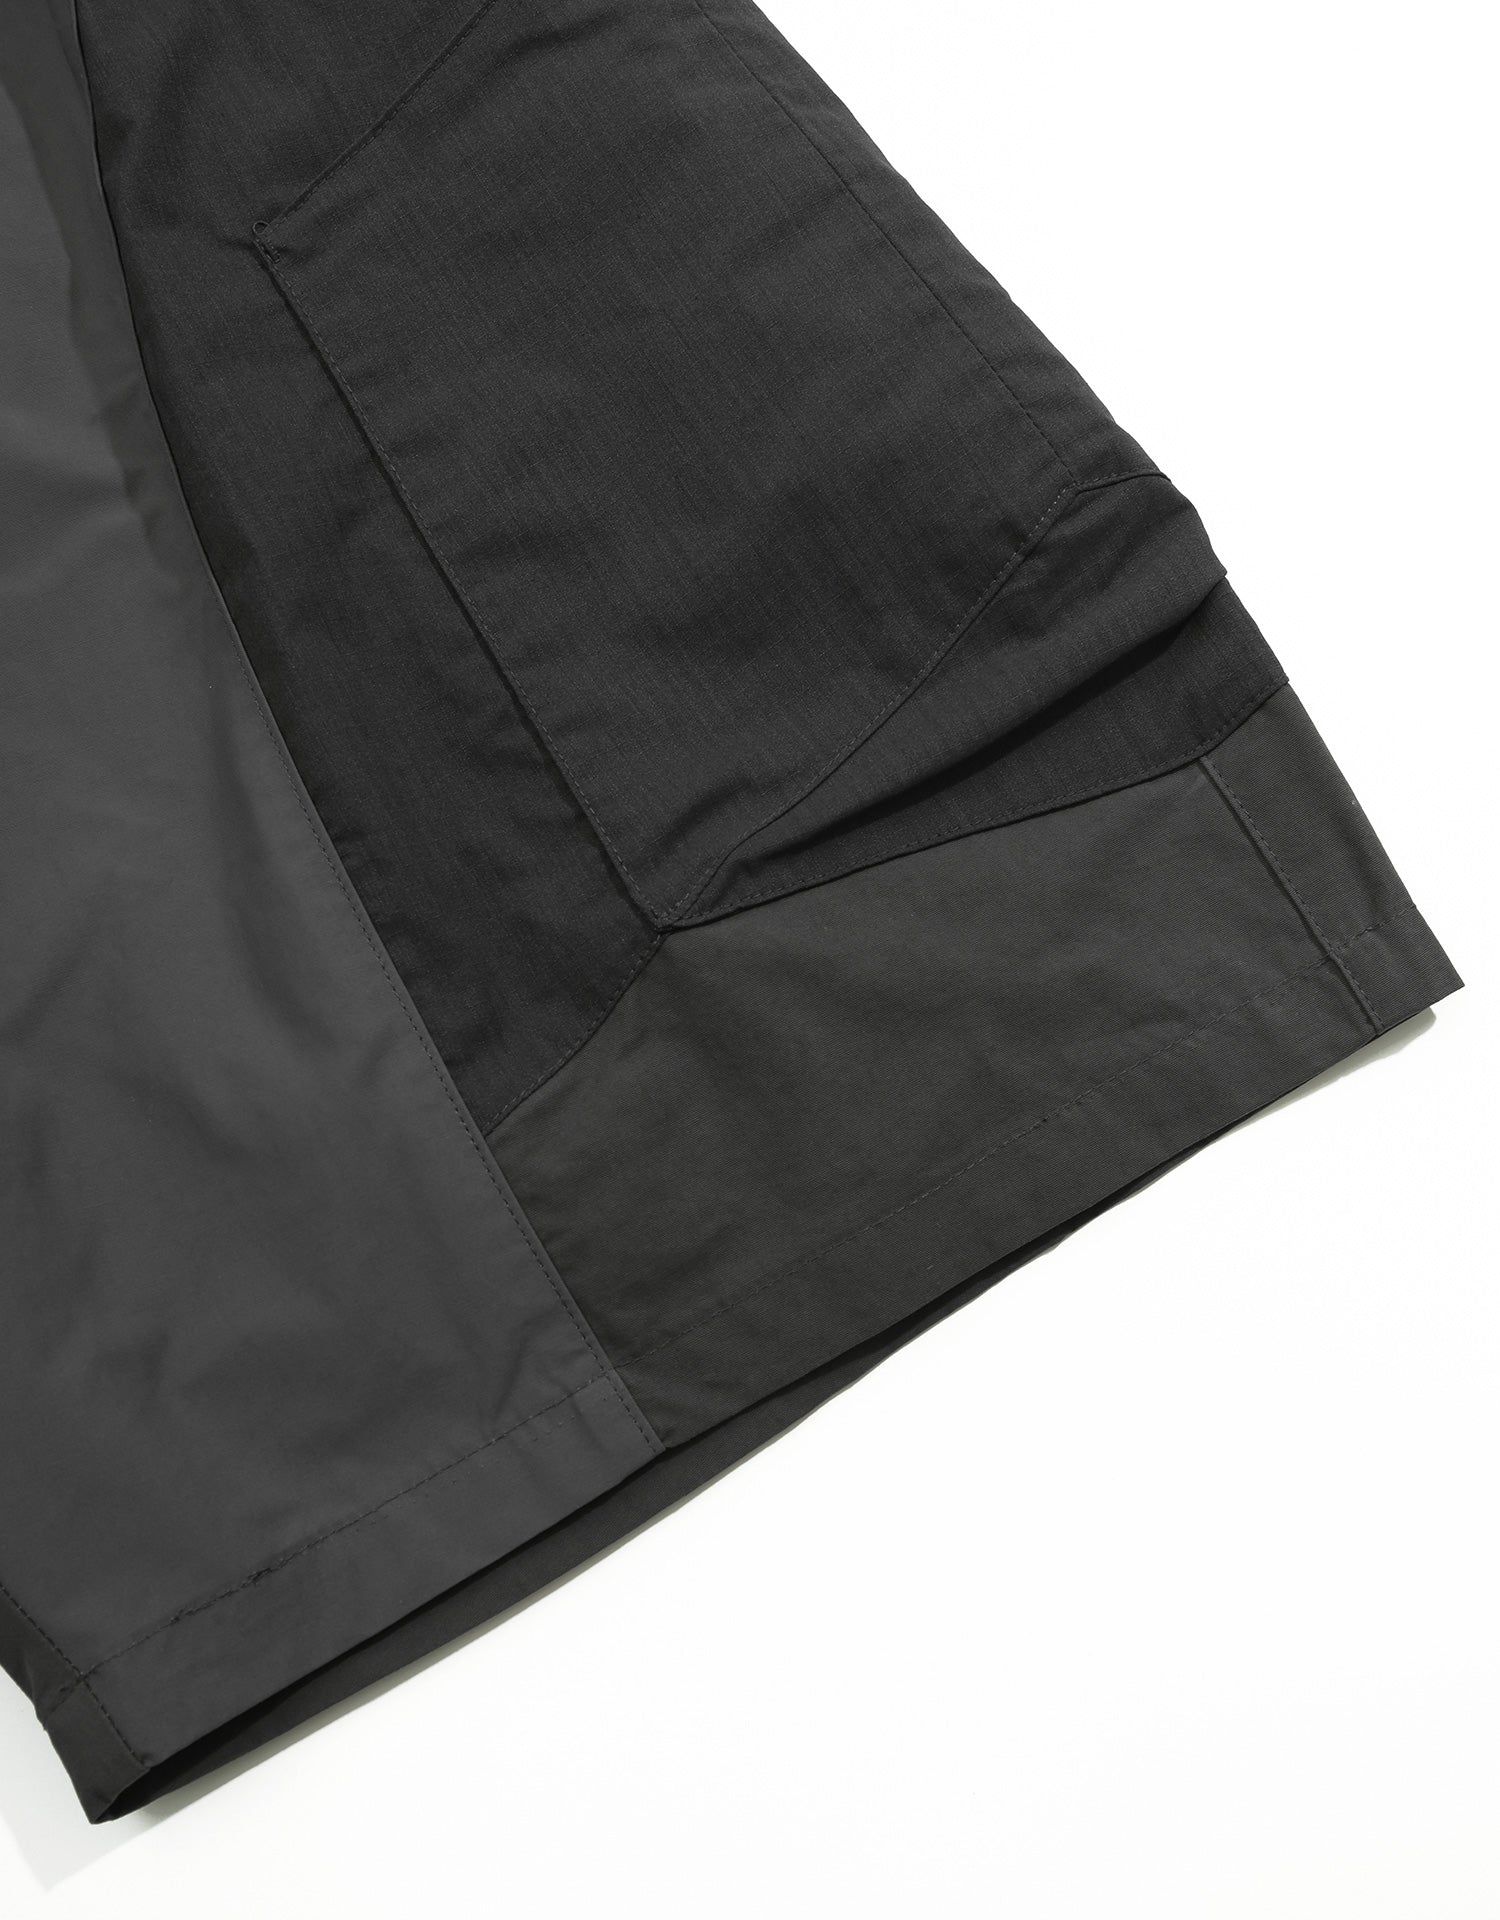 TopBasics Four Pockets Utility Shorts